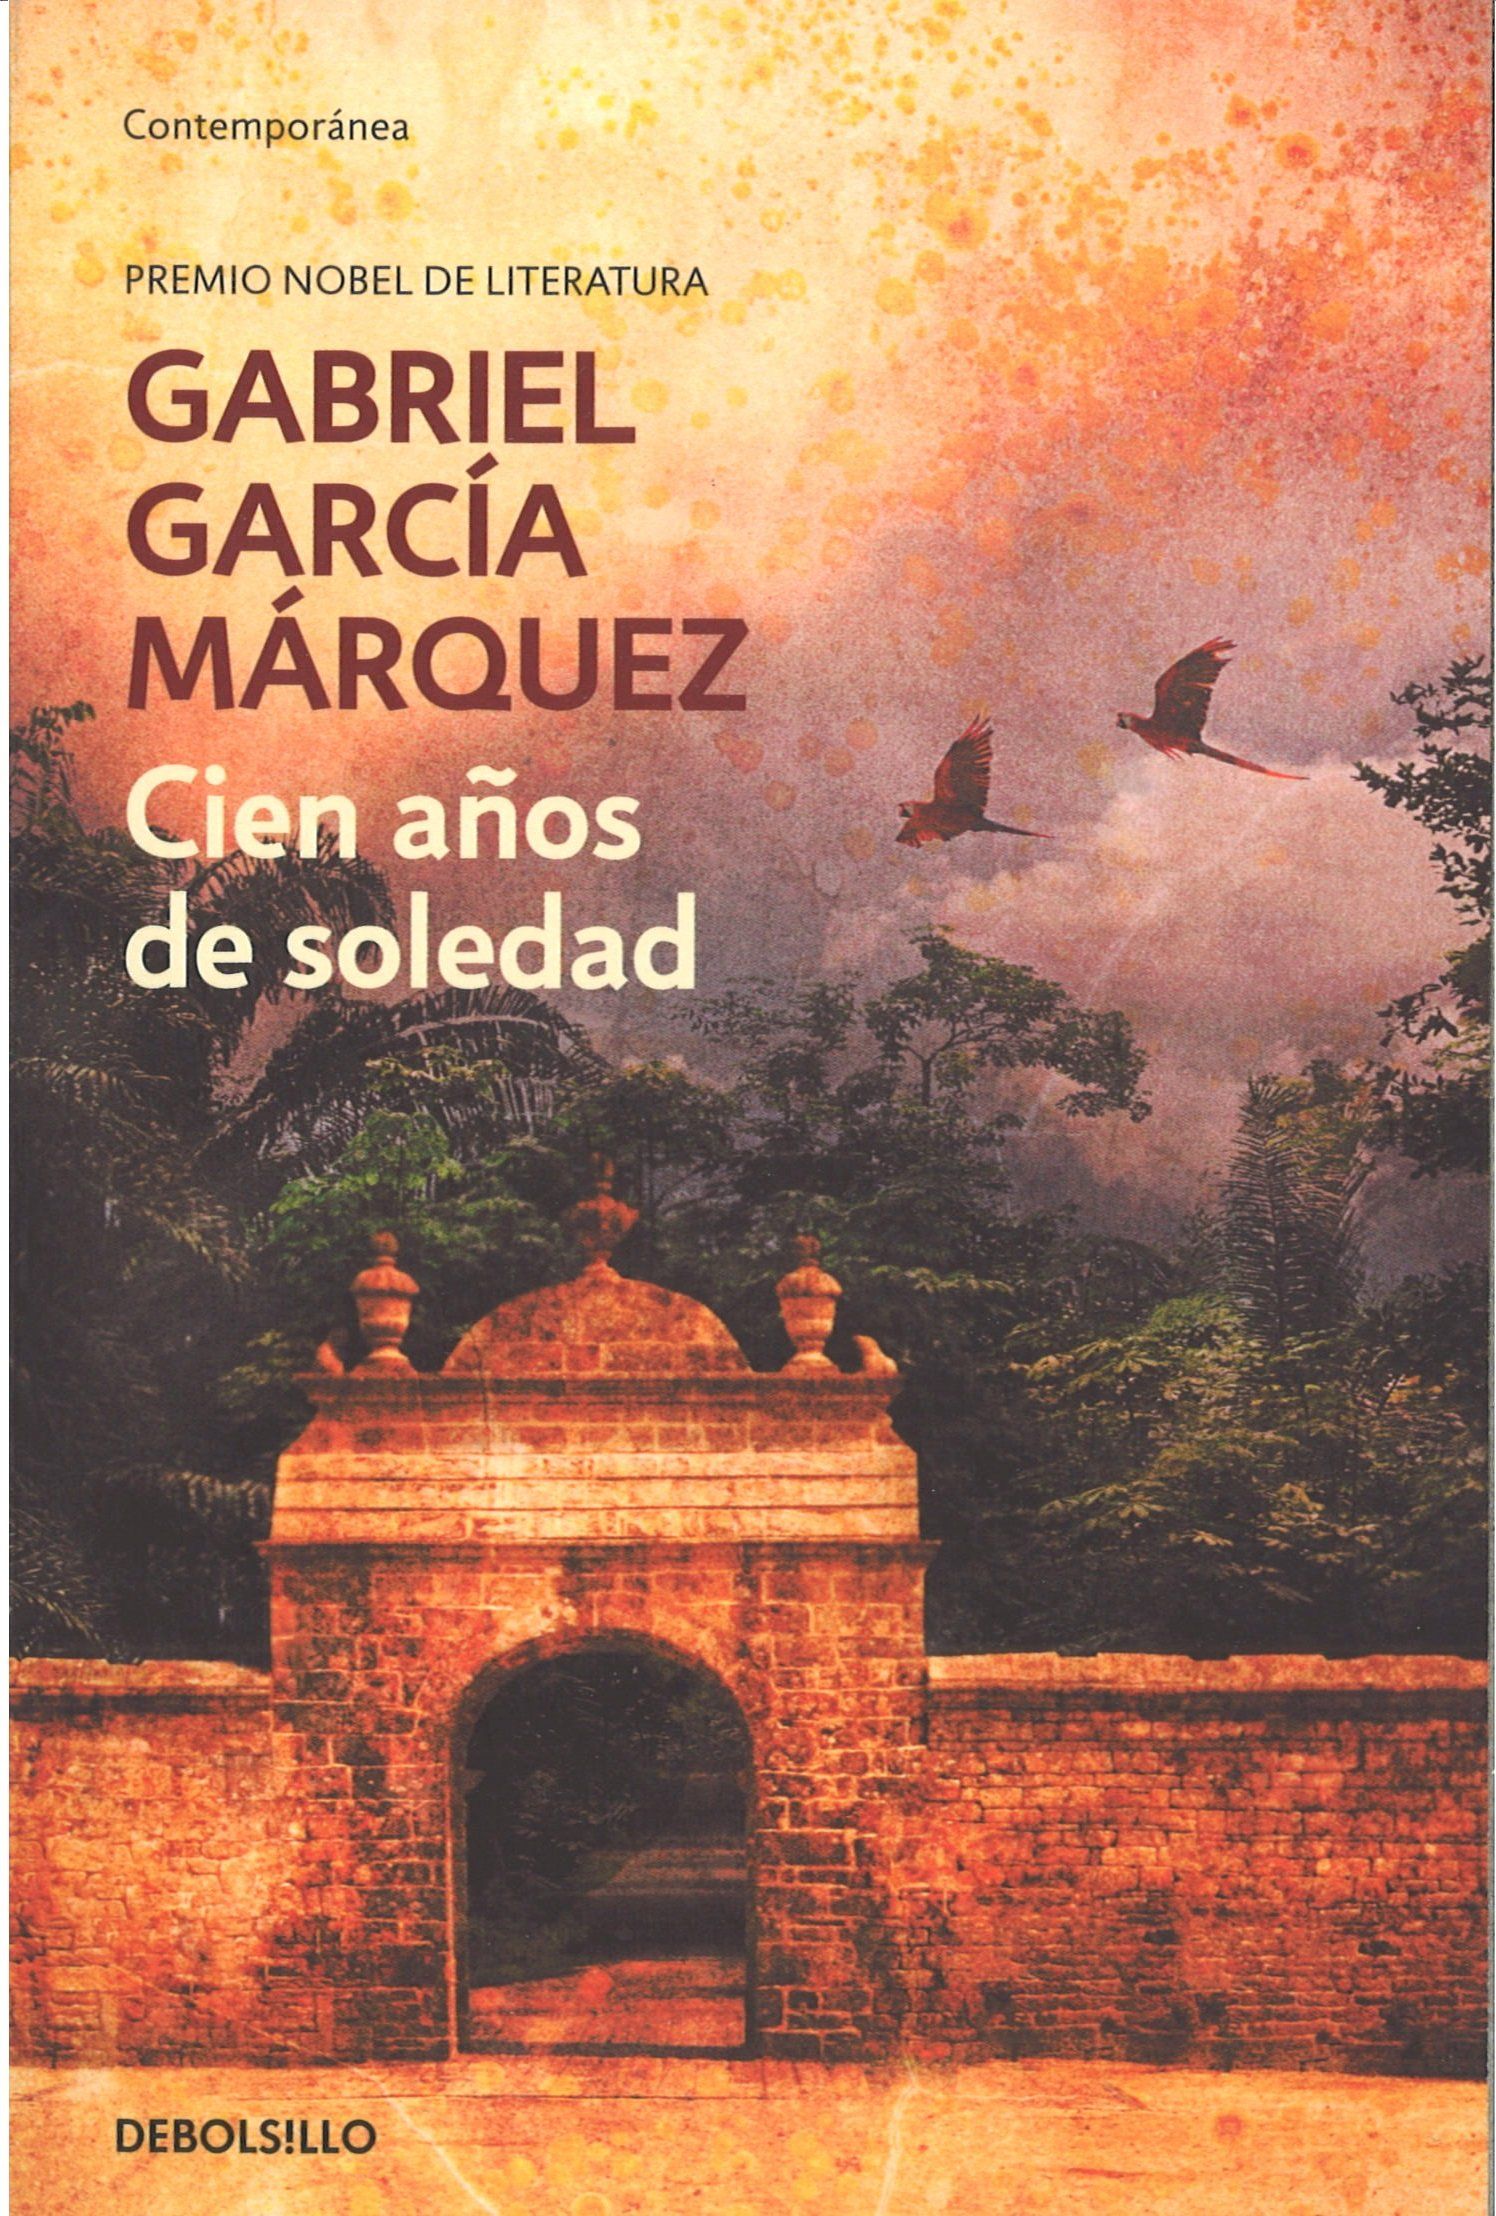 los mejores libros en español para leer